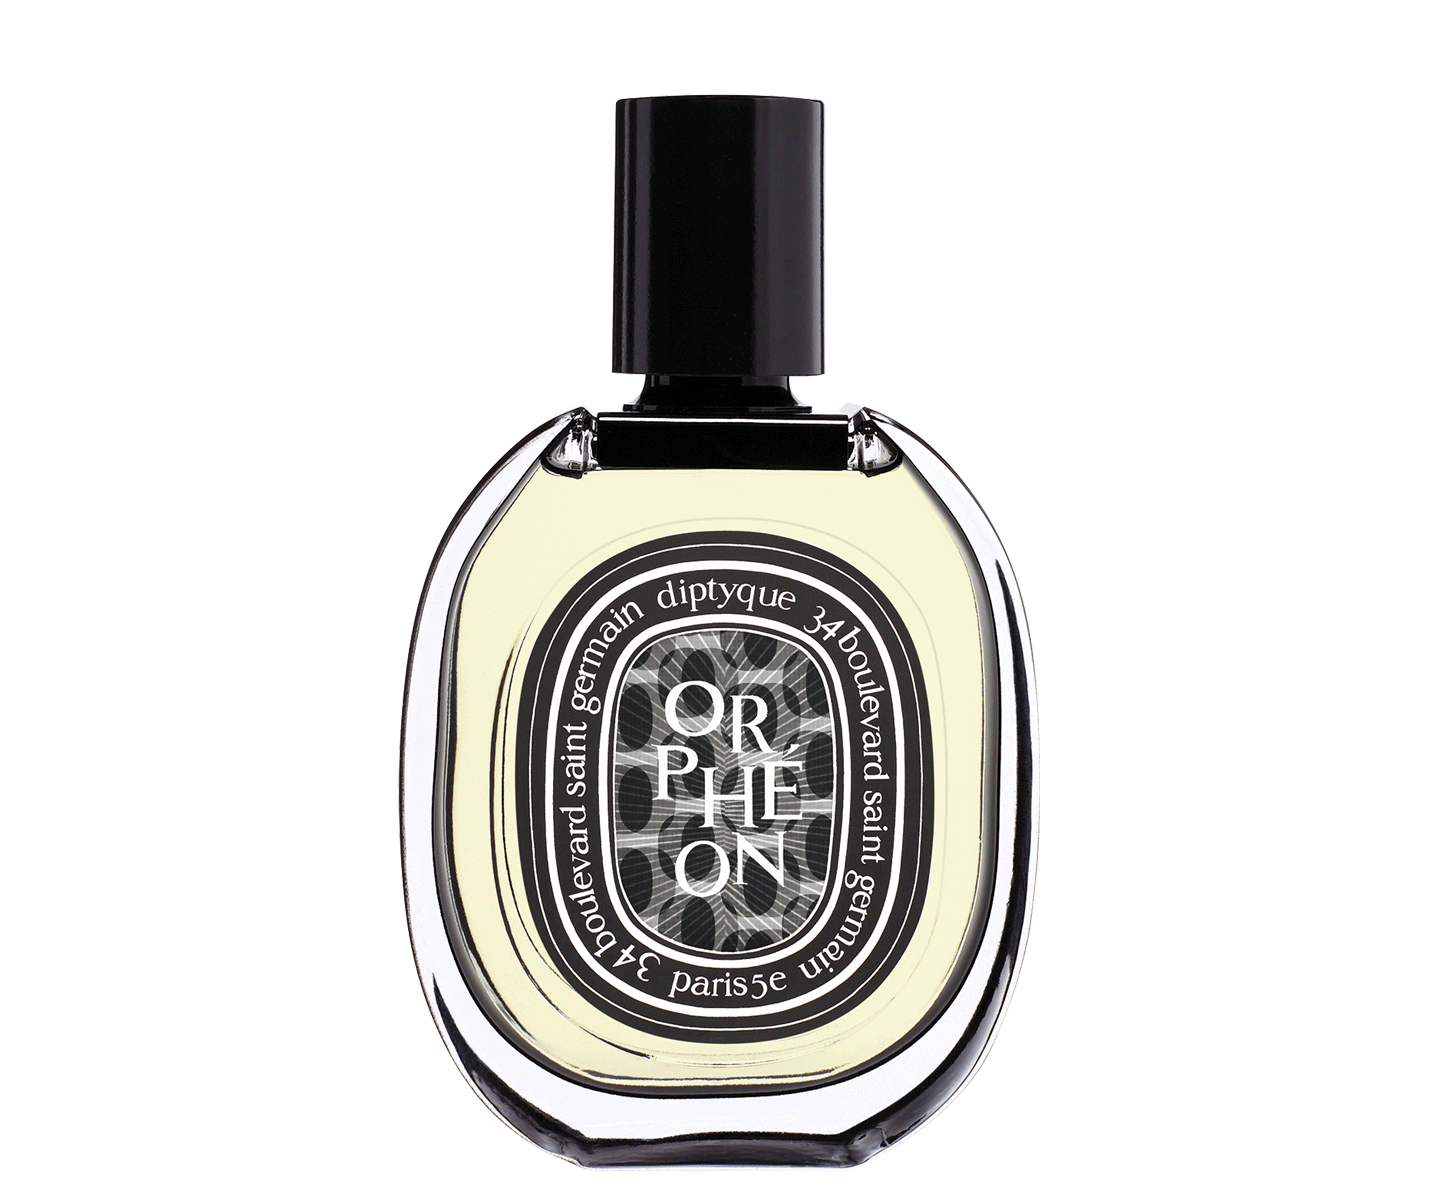 Orphéon Eau de Parfum 75ml - Woody | Diptyque Paris